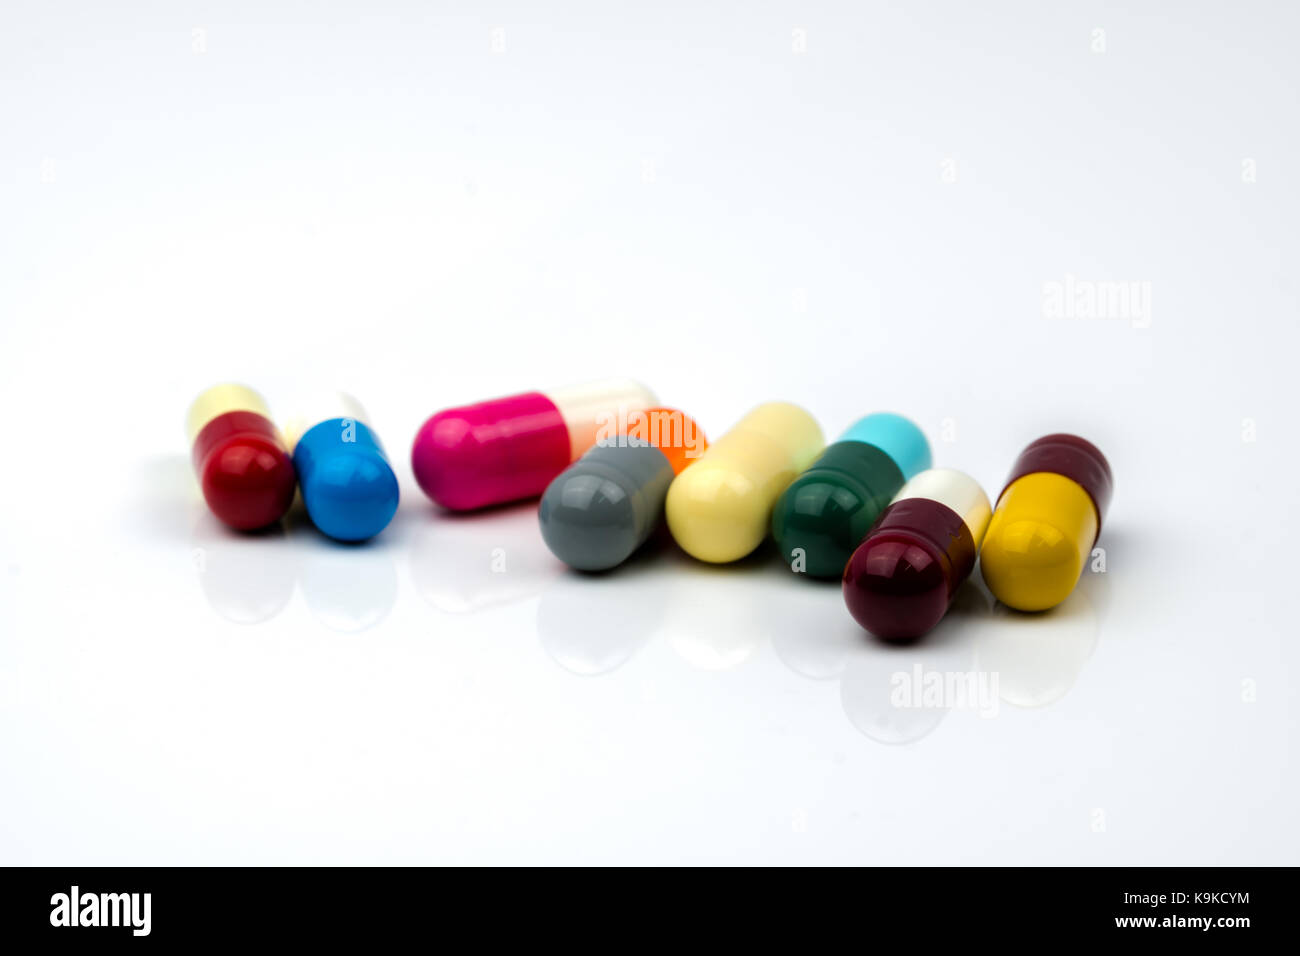 Capsules comprimés d'antibiotique colorés sur fond blanc avec copie espace. La résistance aux médicaments, l'utilisation d'antibiotiques avec raisonnable, la politique de santé et hea Banque D'Images